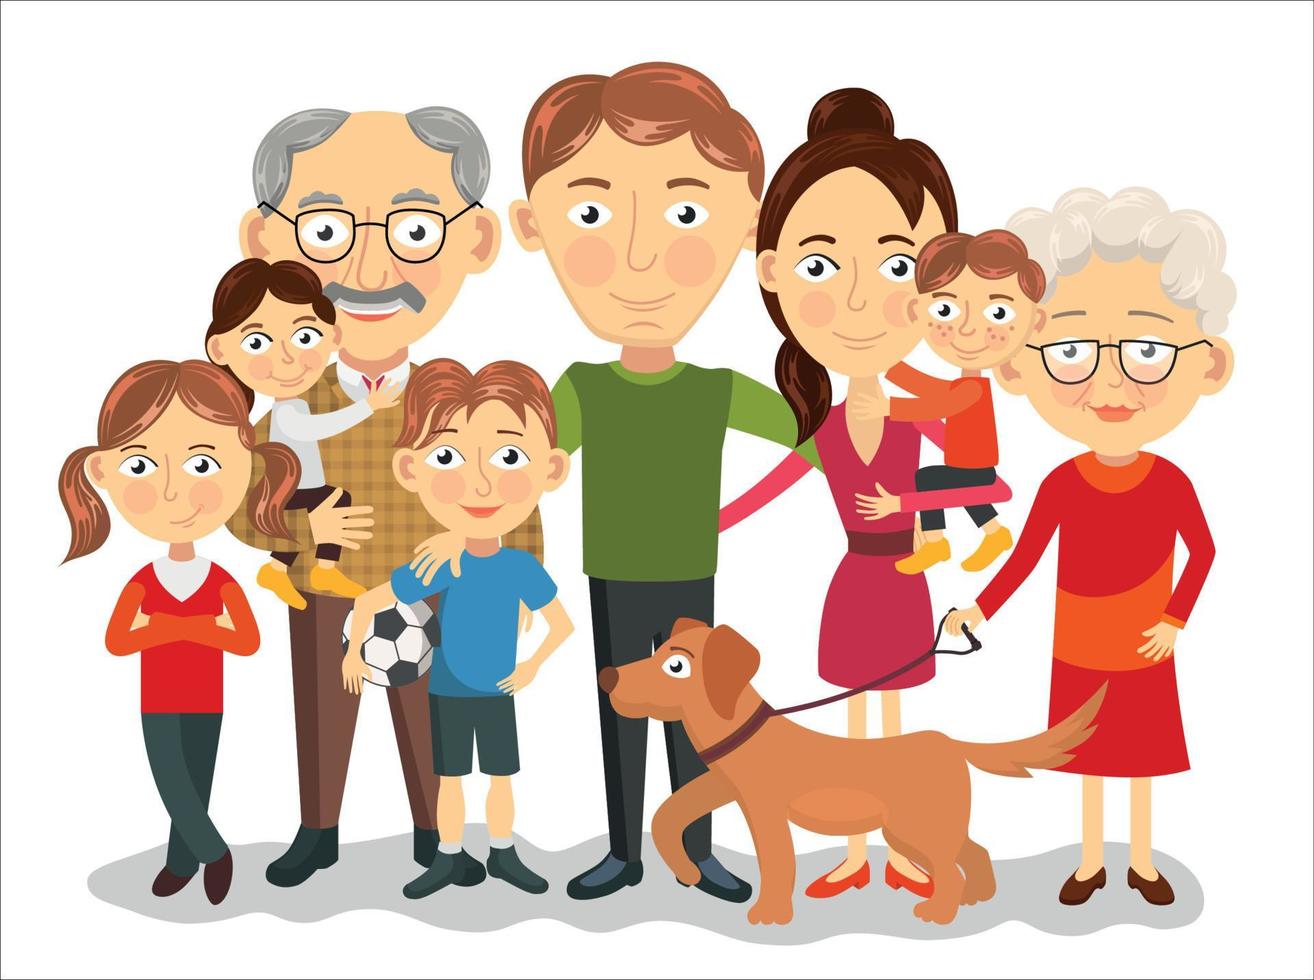 grande e feliz família retrato com crianças, pais, avós vetor ilustração